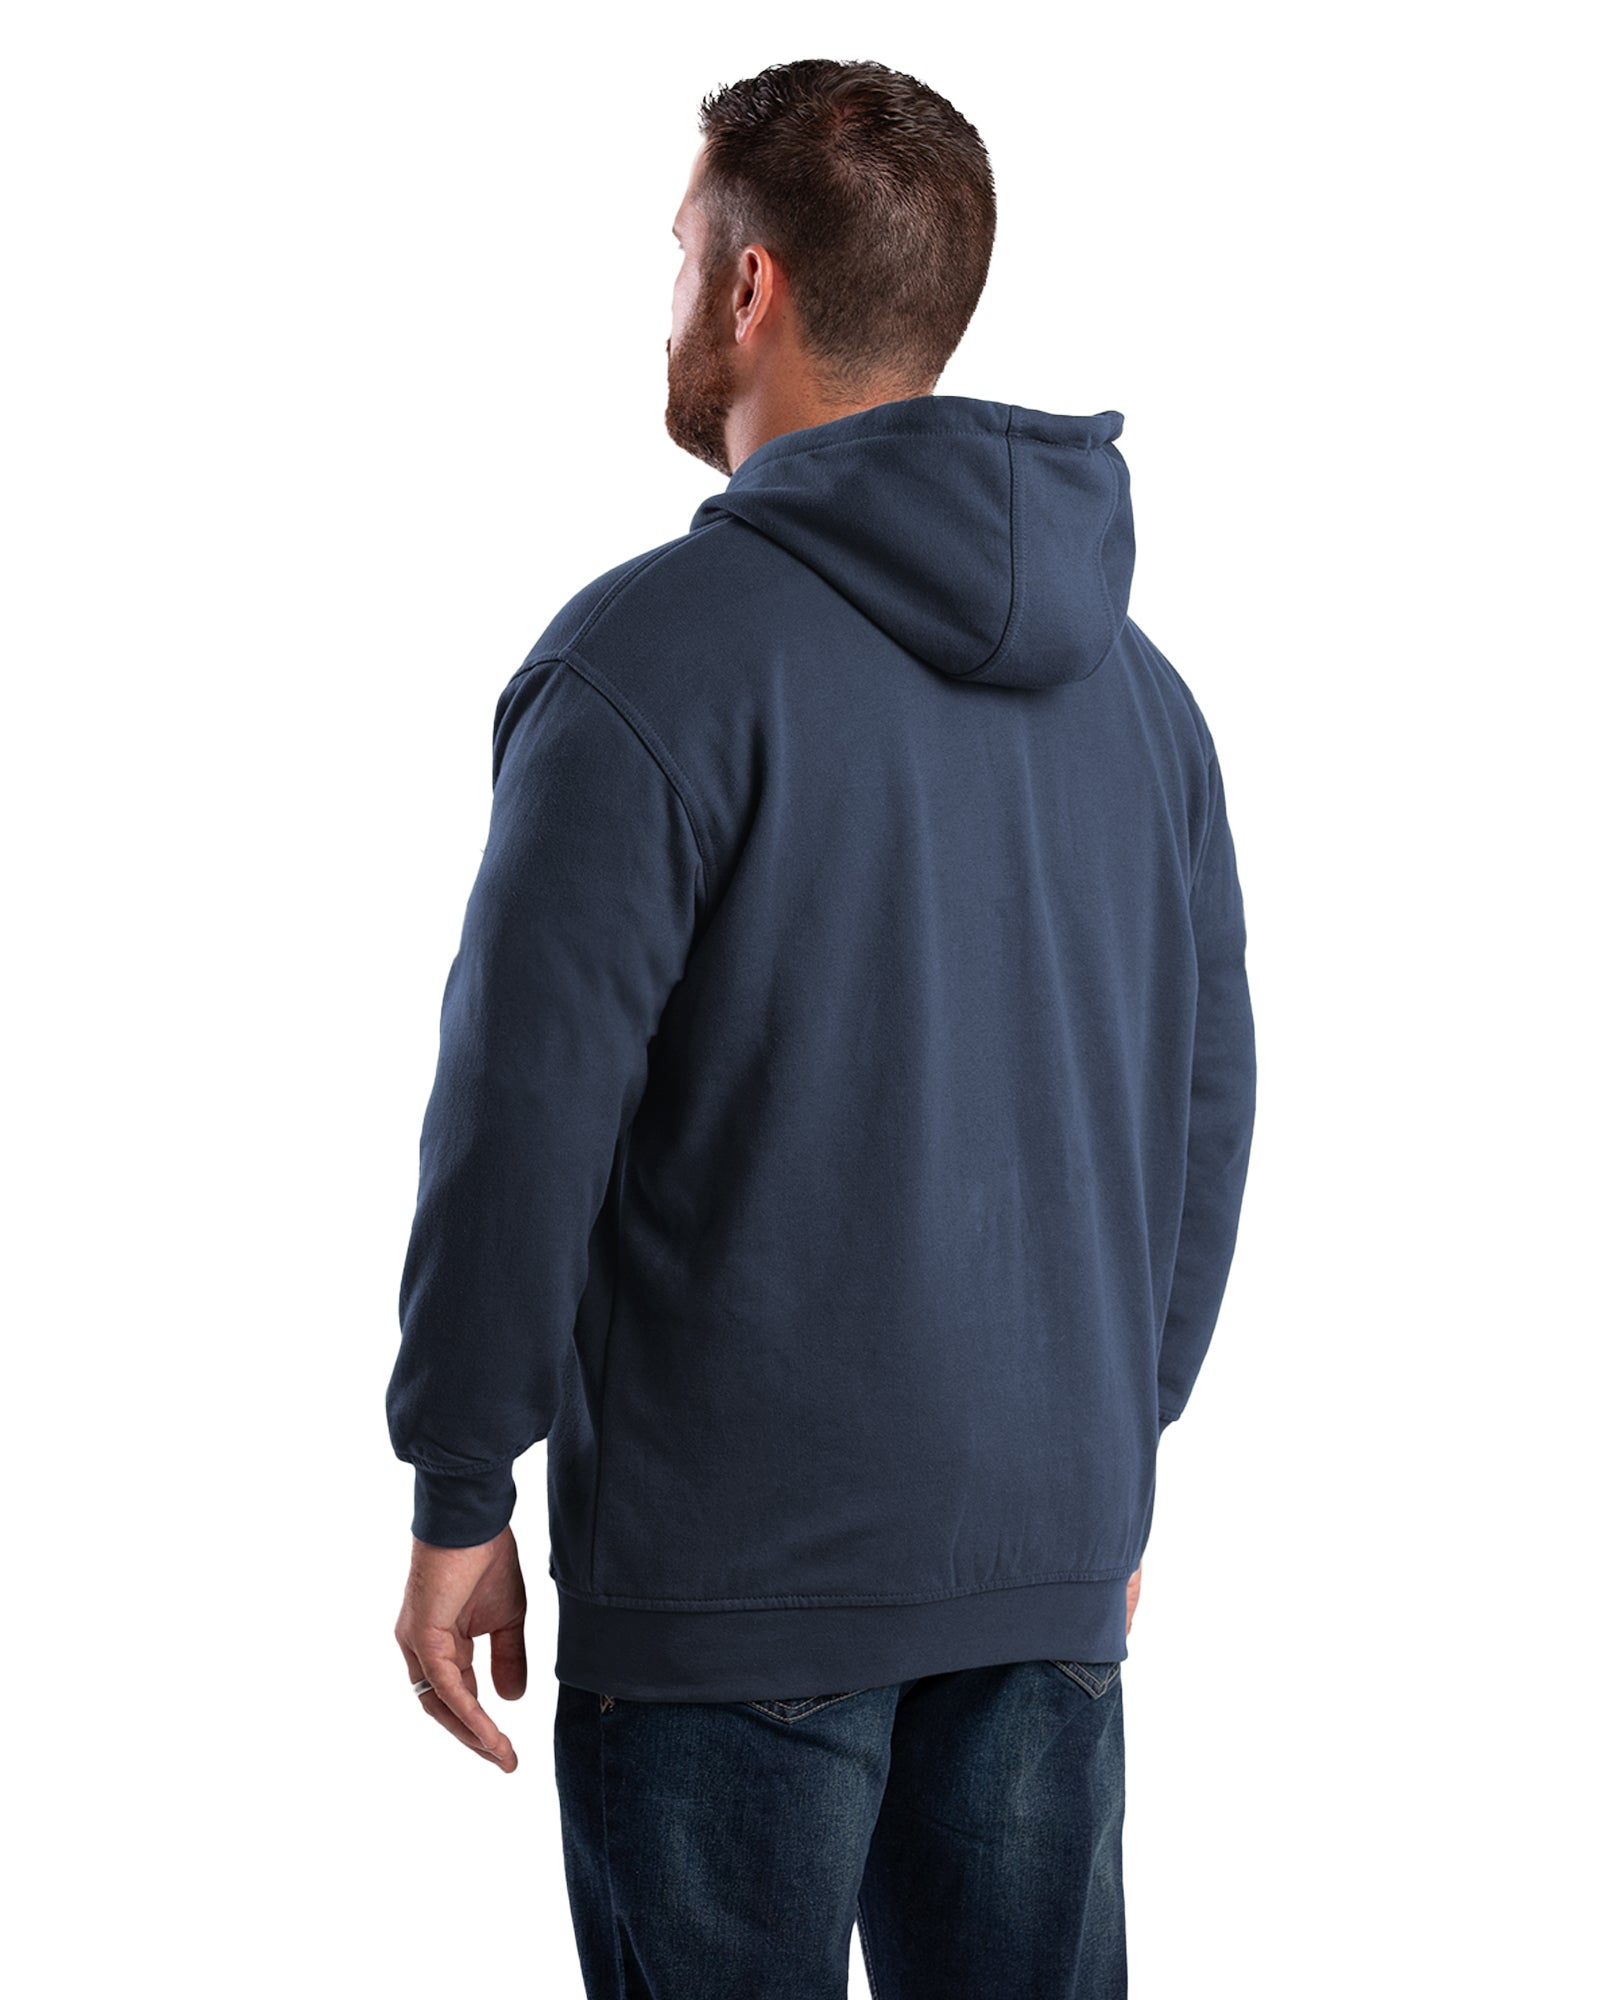 Berne Apparel Thermal Lined Hooded Sweatshirt SZ101 Sweatshirt